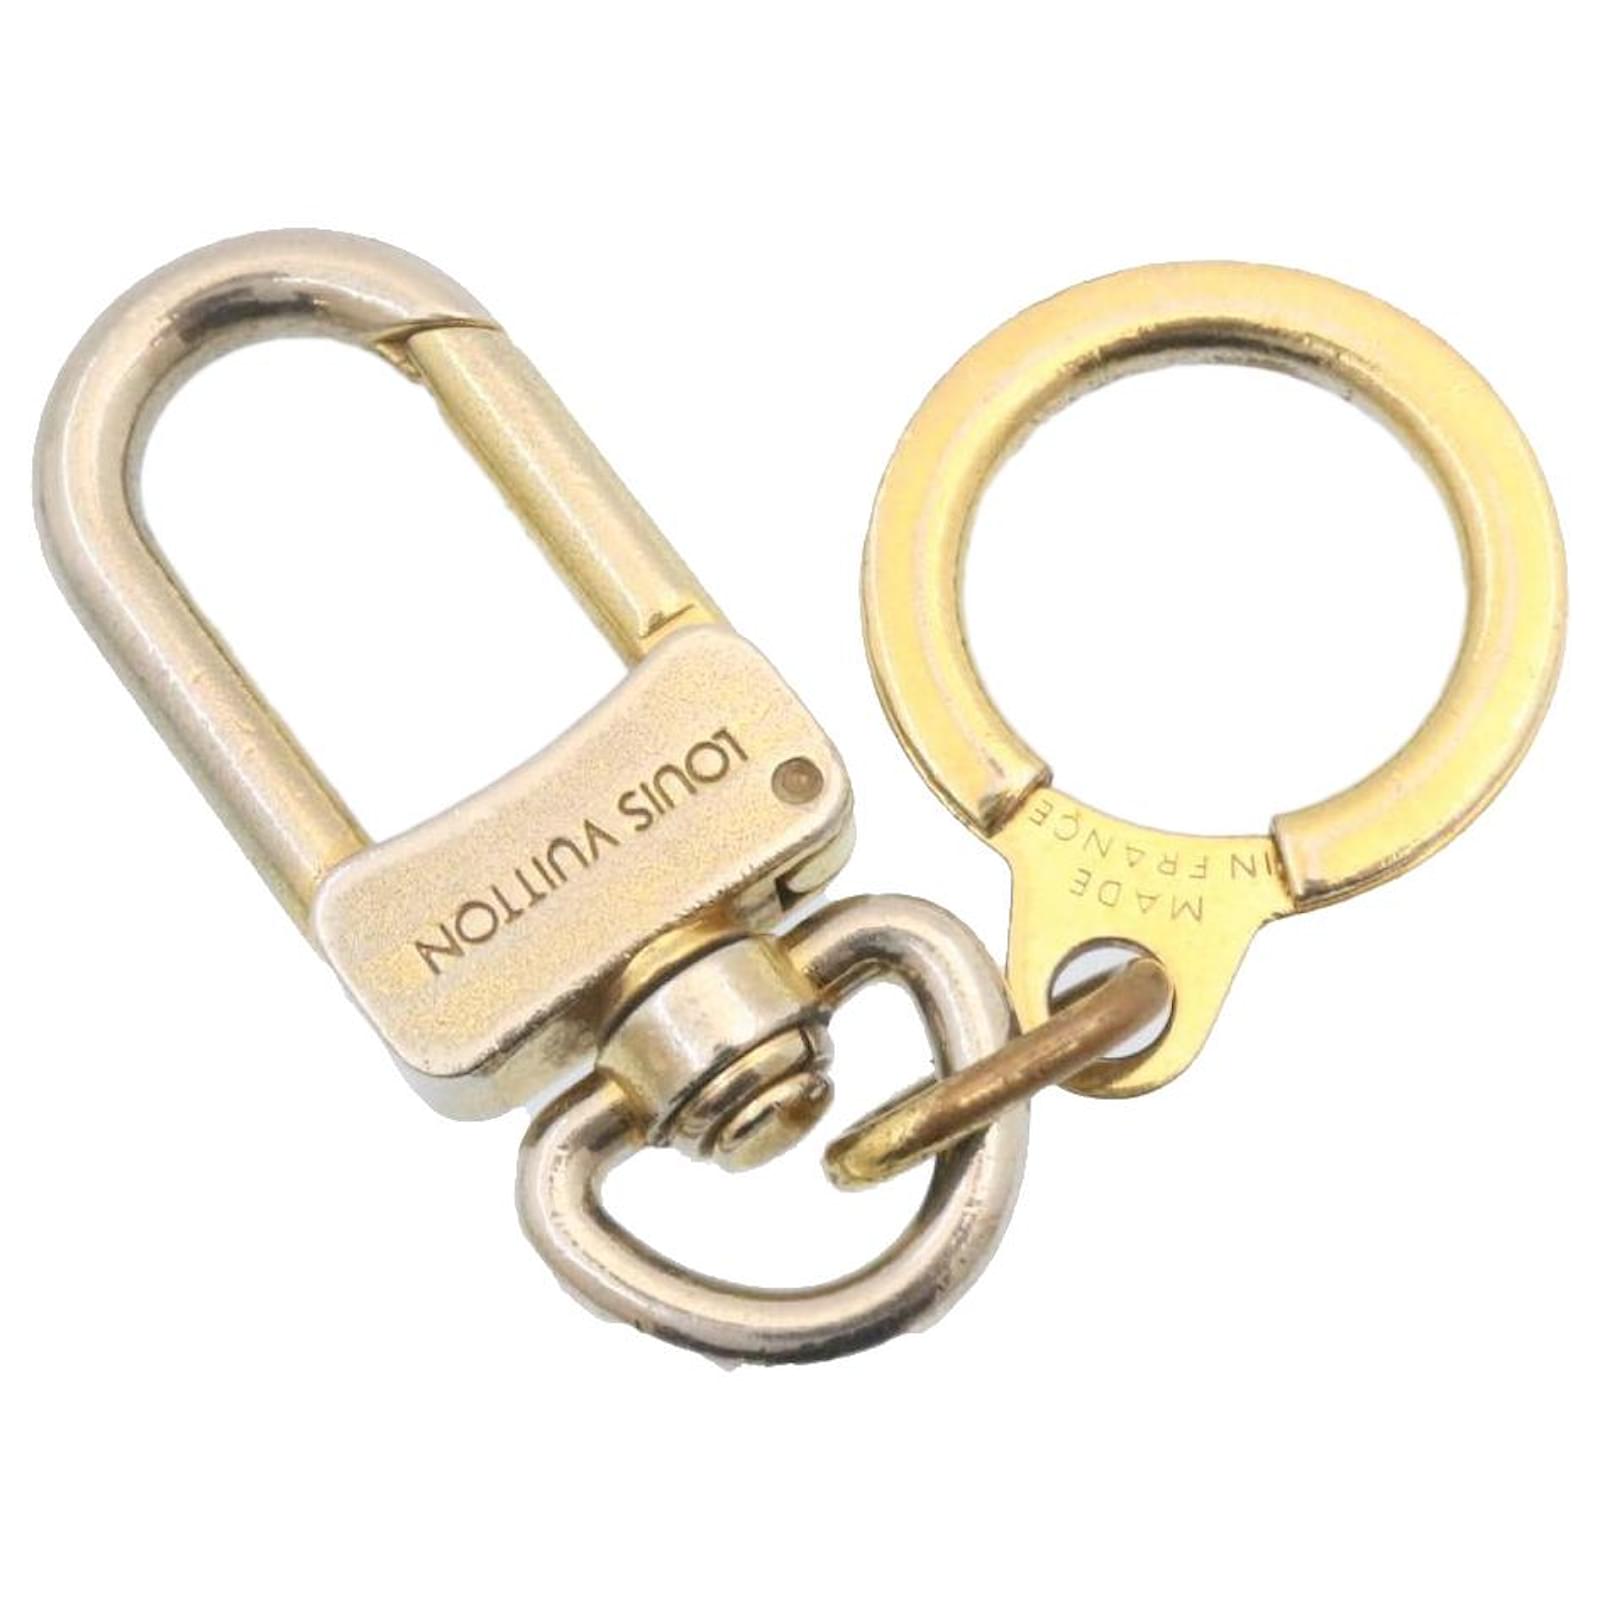 louis-vuitton key chain holder charm